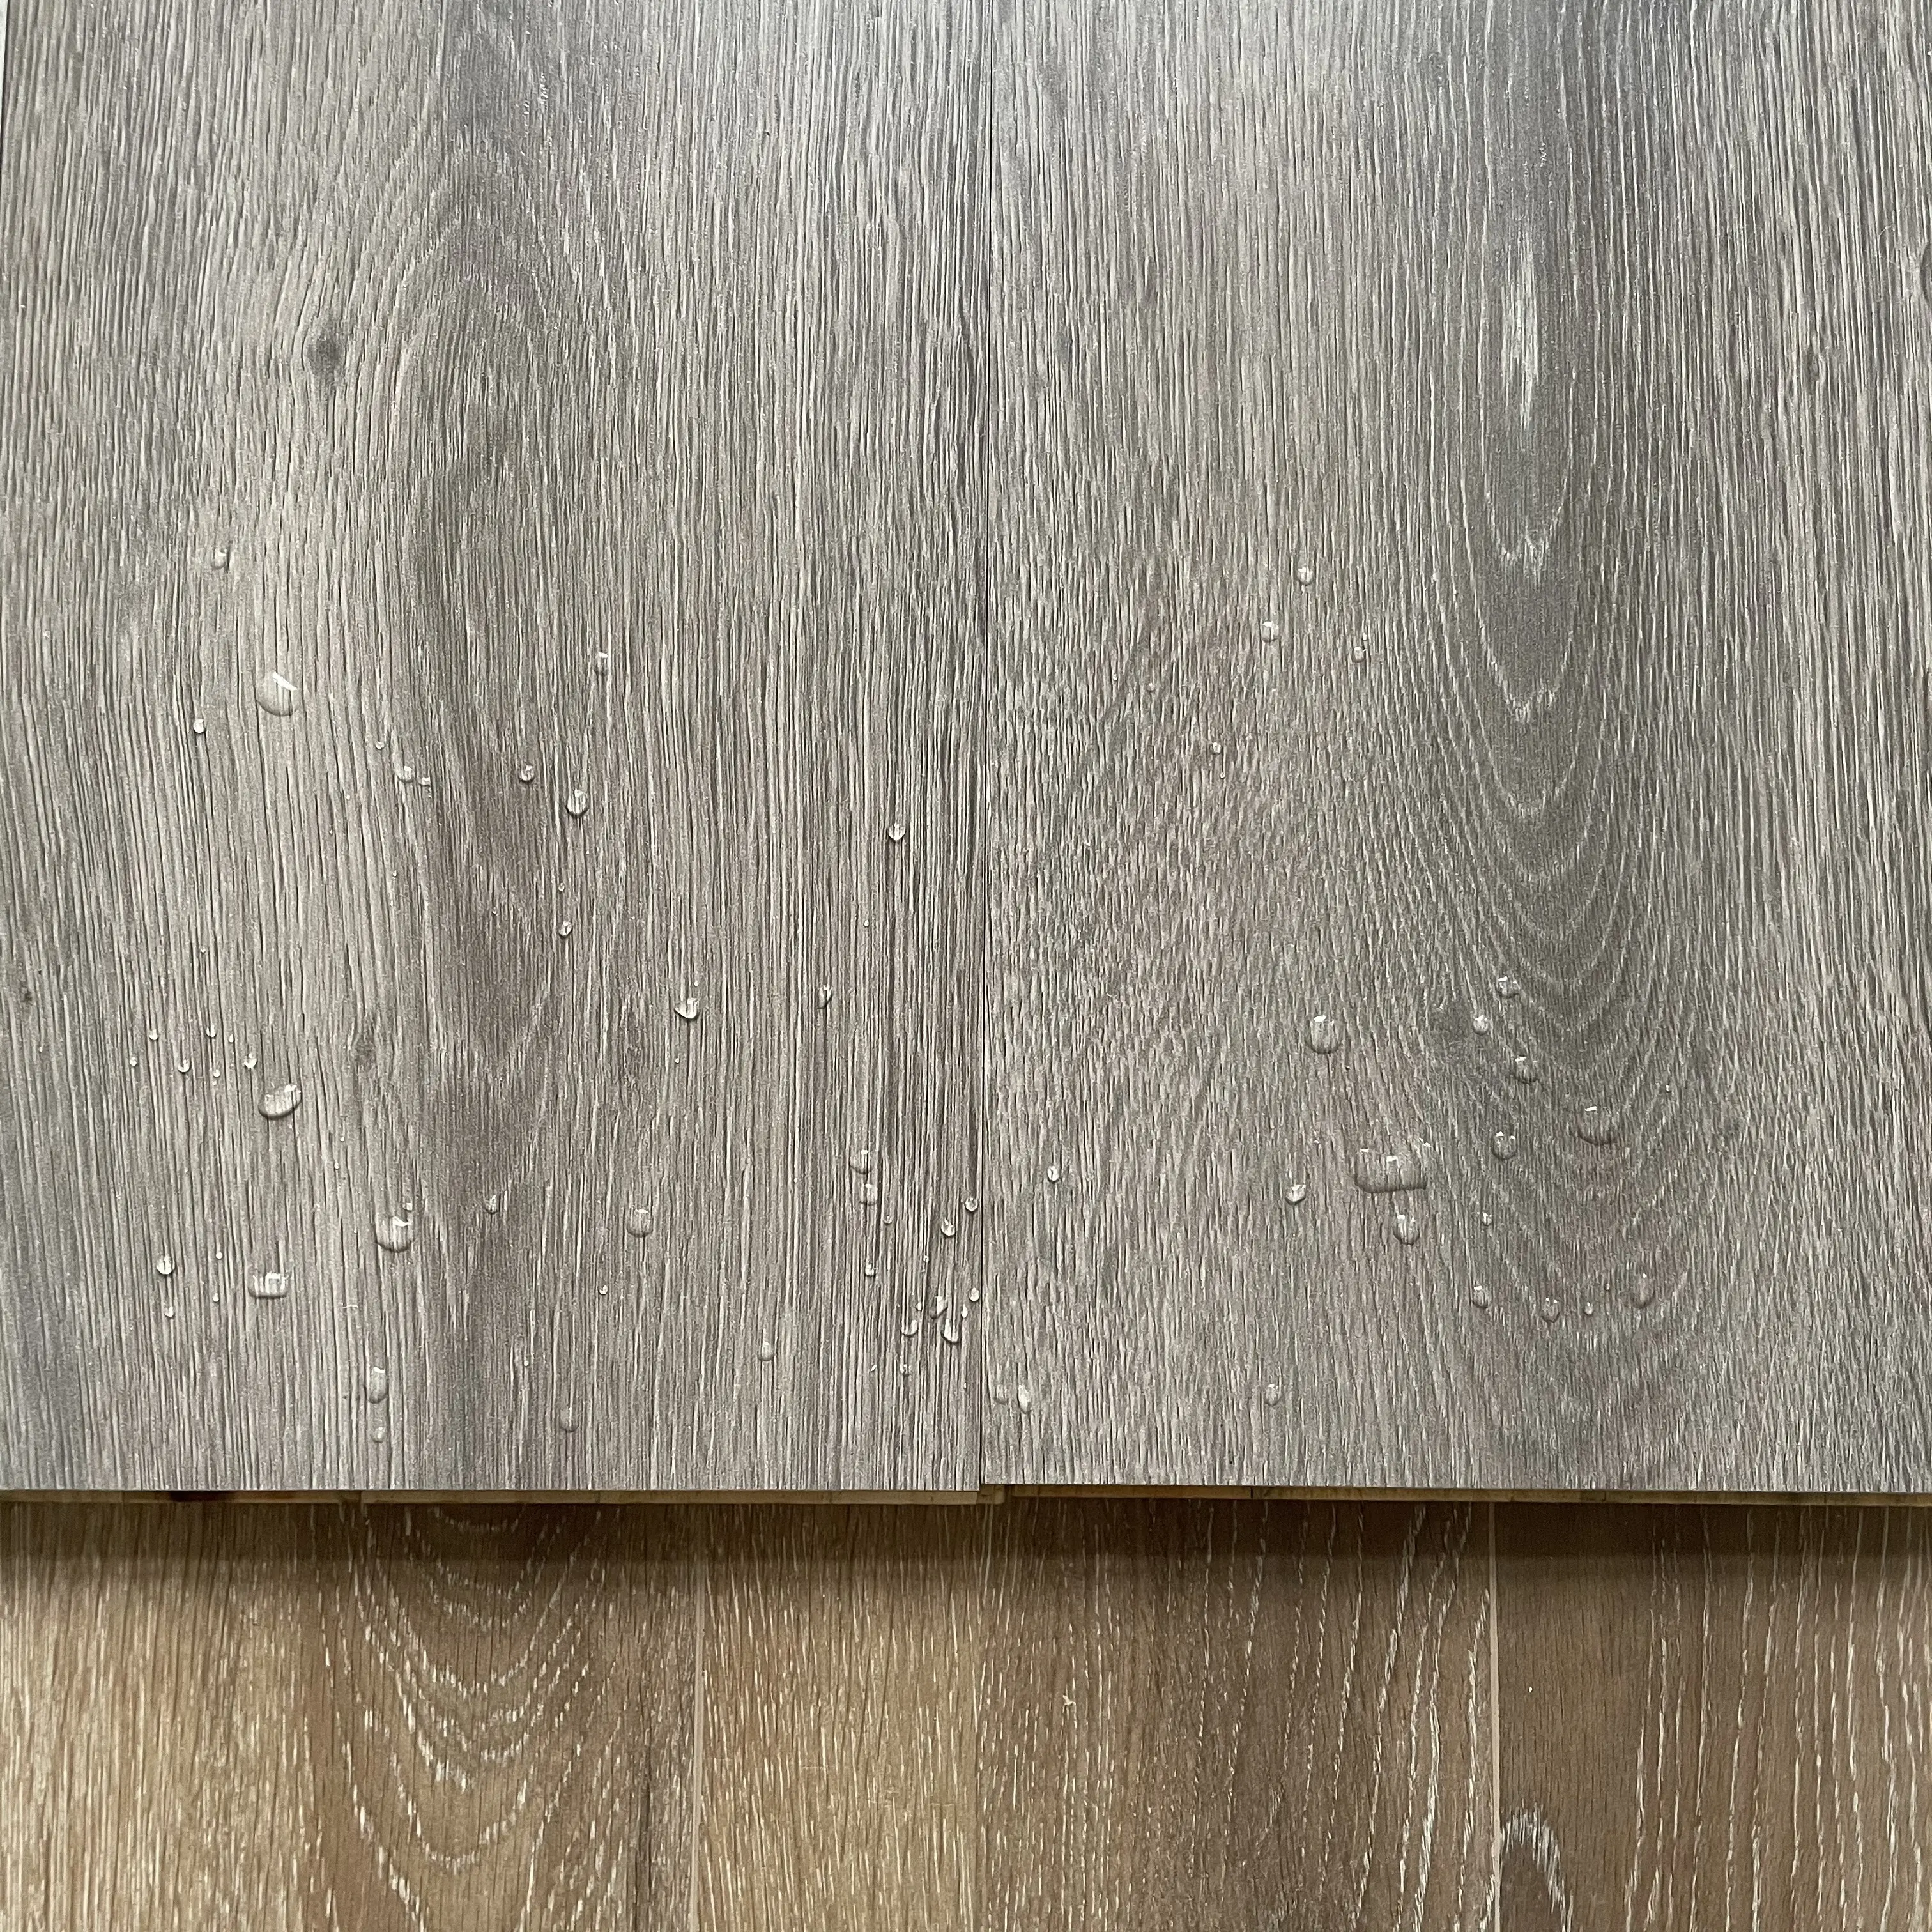 uspc waterproof oak laminate flooring linoleum